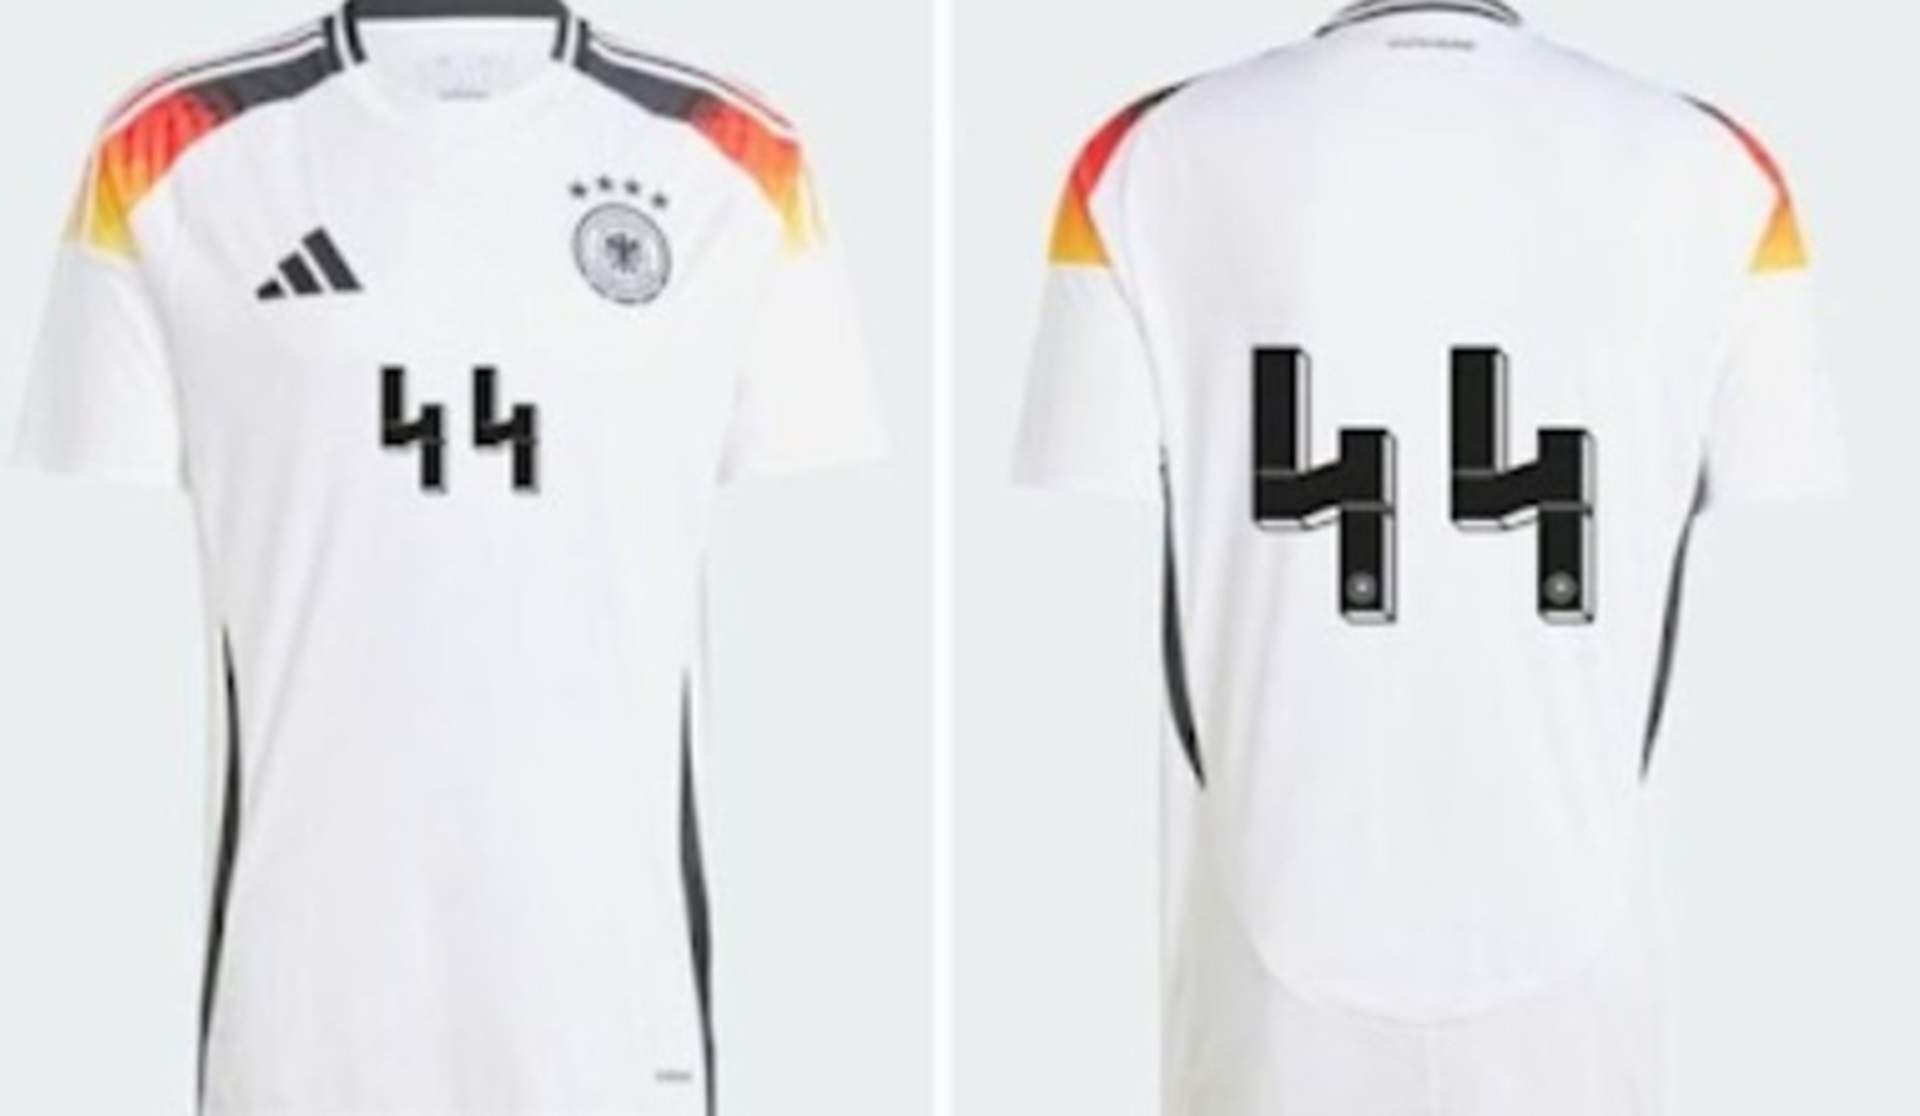 Adidas retira el dorsal 44 de la camiseta de Alemania por la similitud con el símbolo de las SS nazis